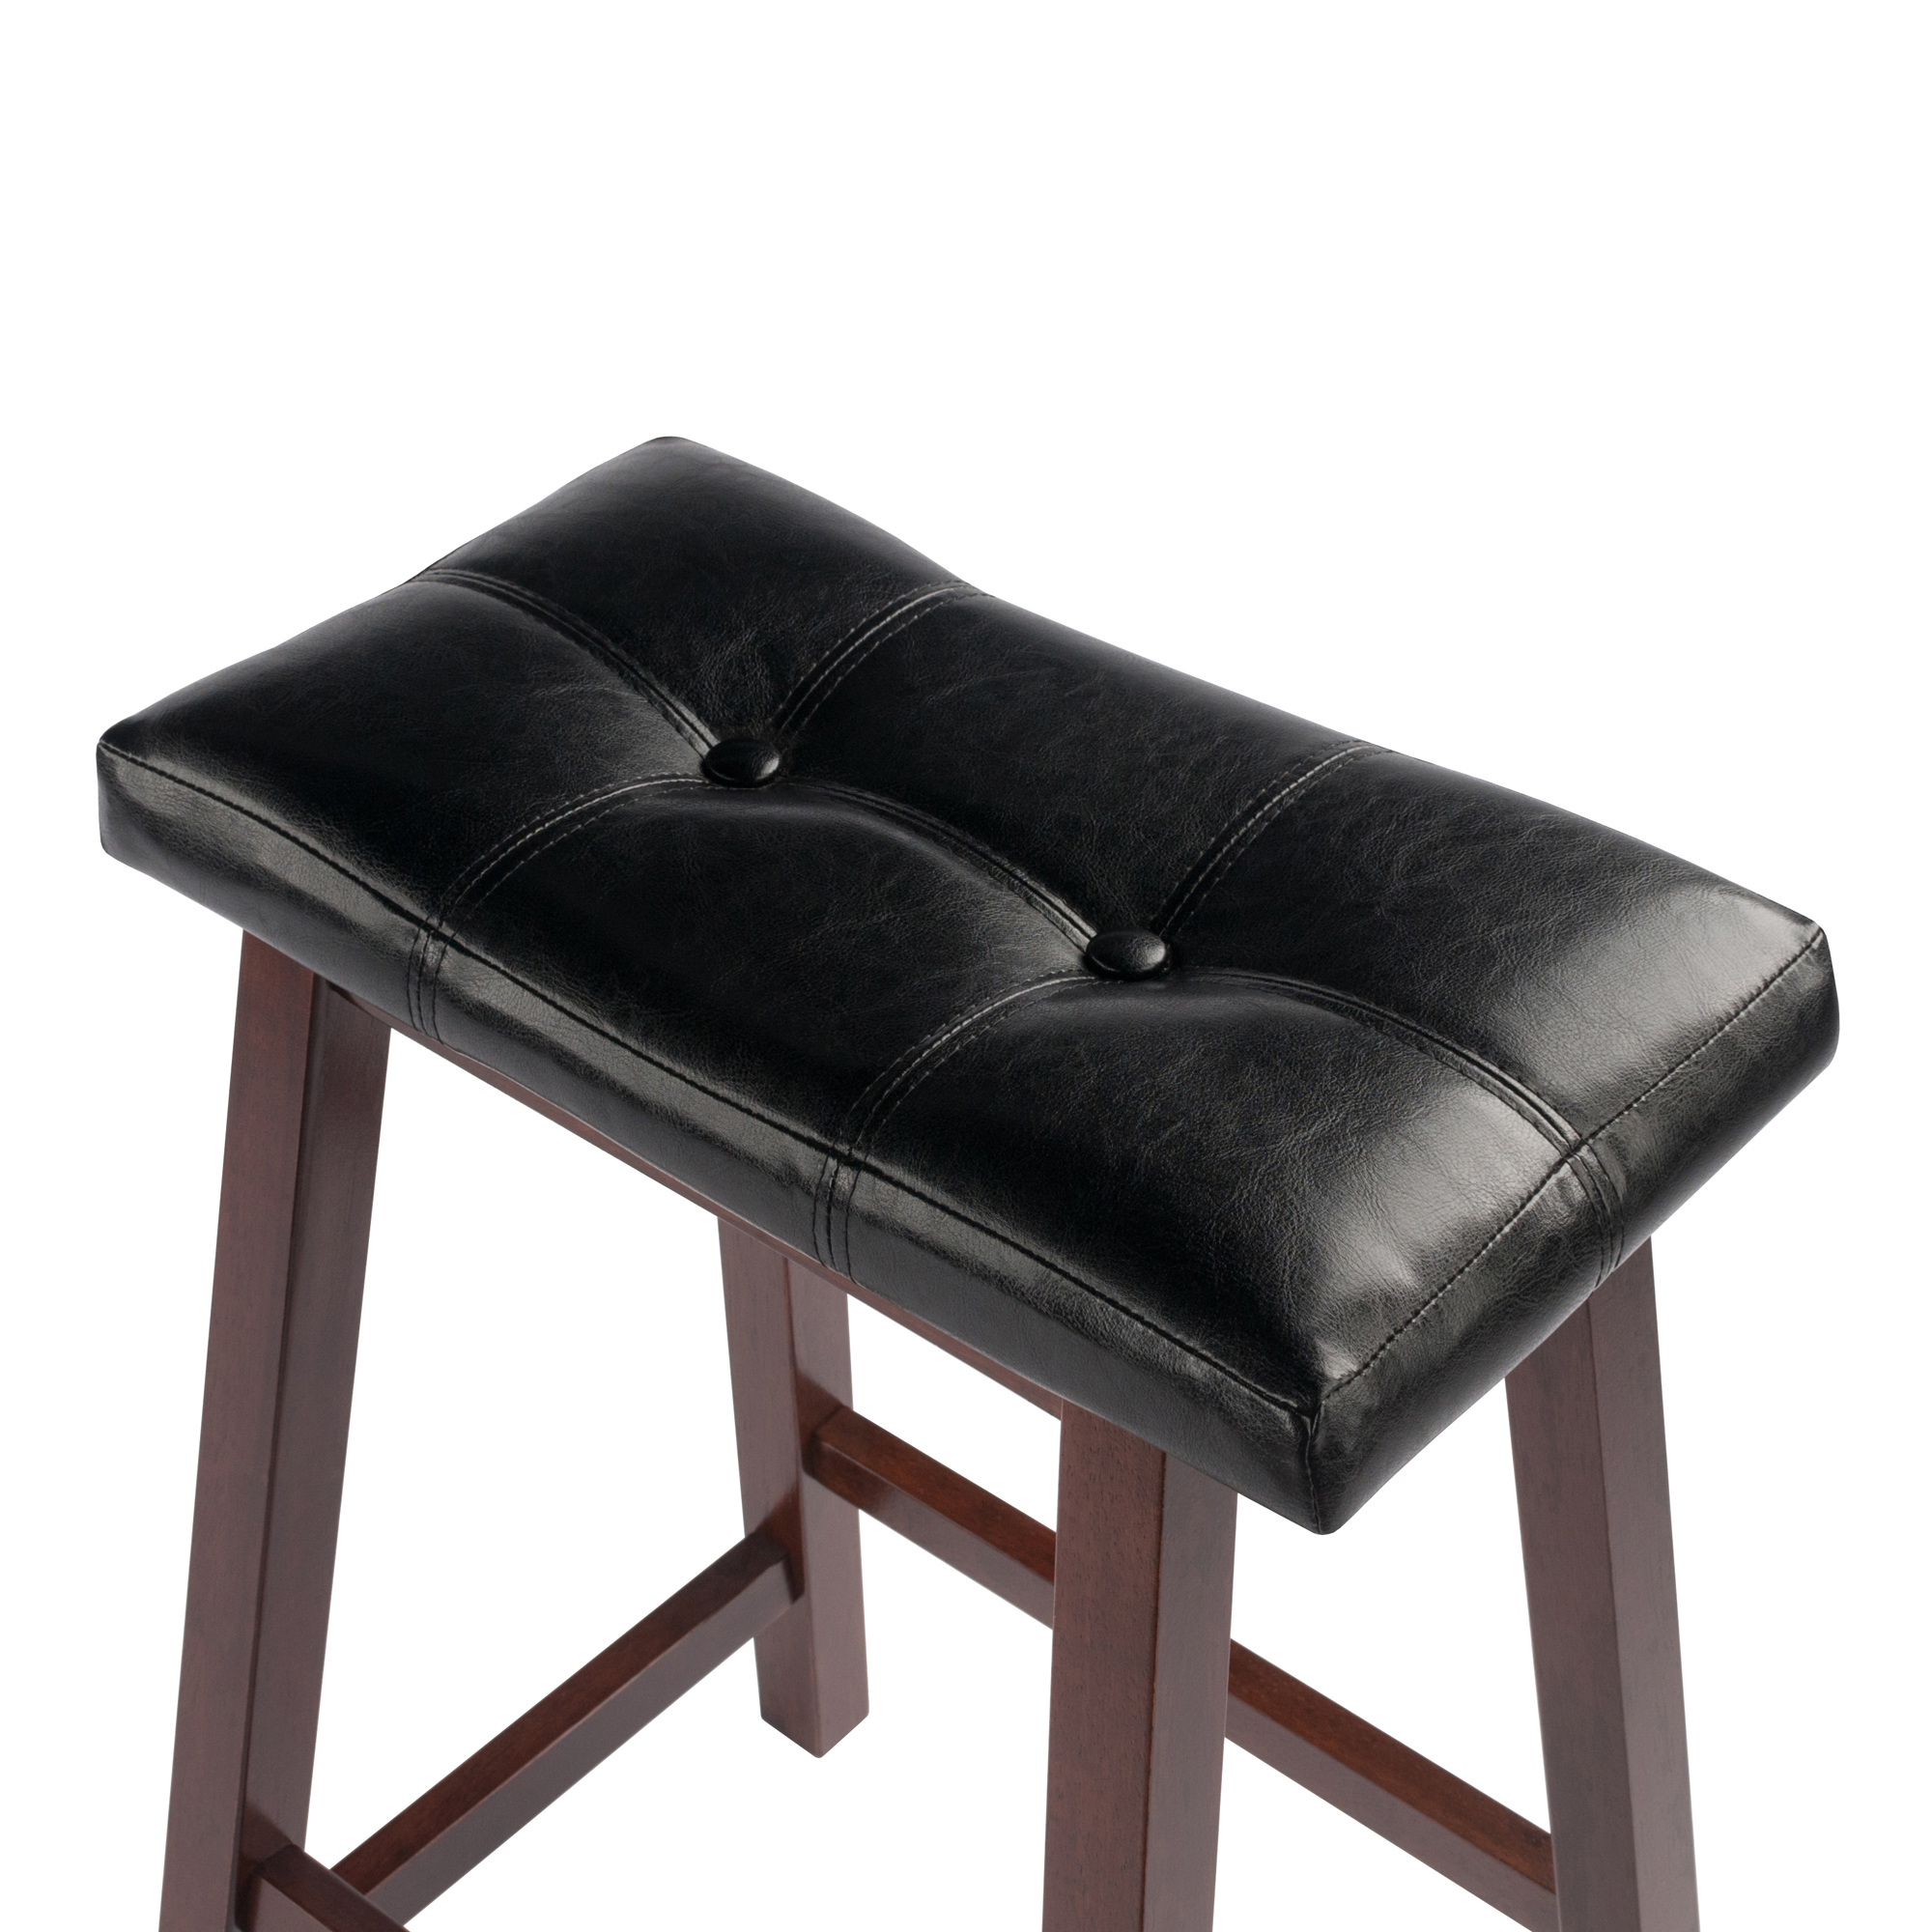 Winsome Wood Mona Cushion Saddle Seat Counter Stool, Black & Walnut - image 4 of 7